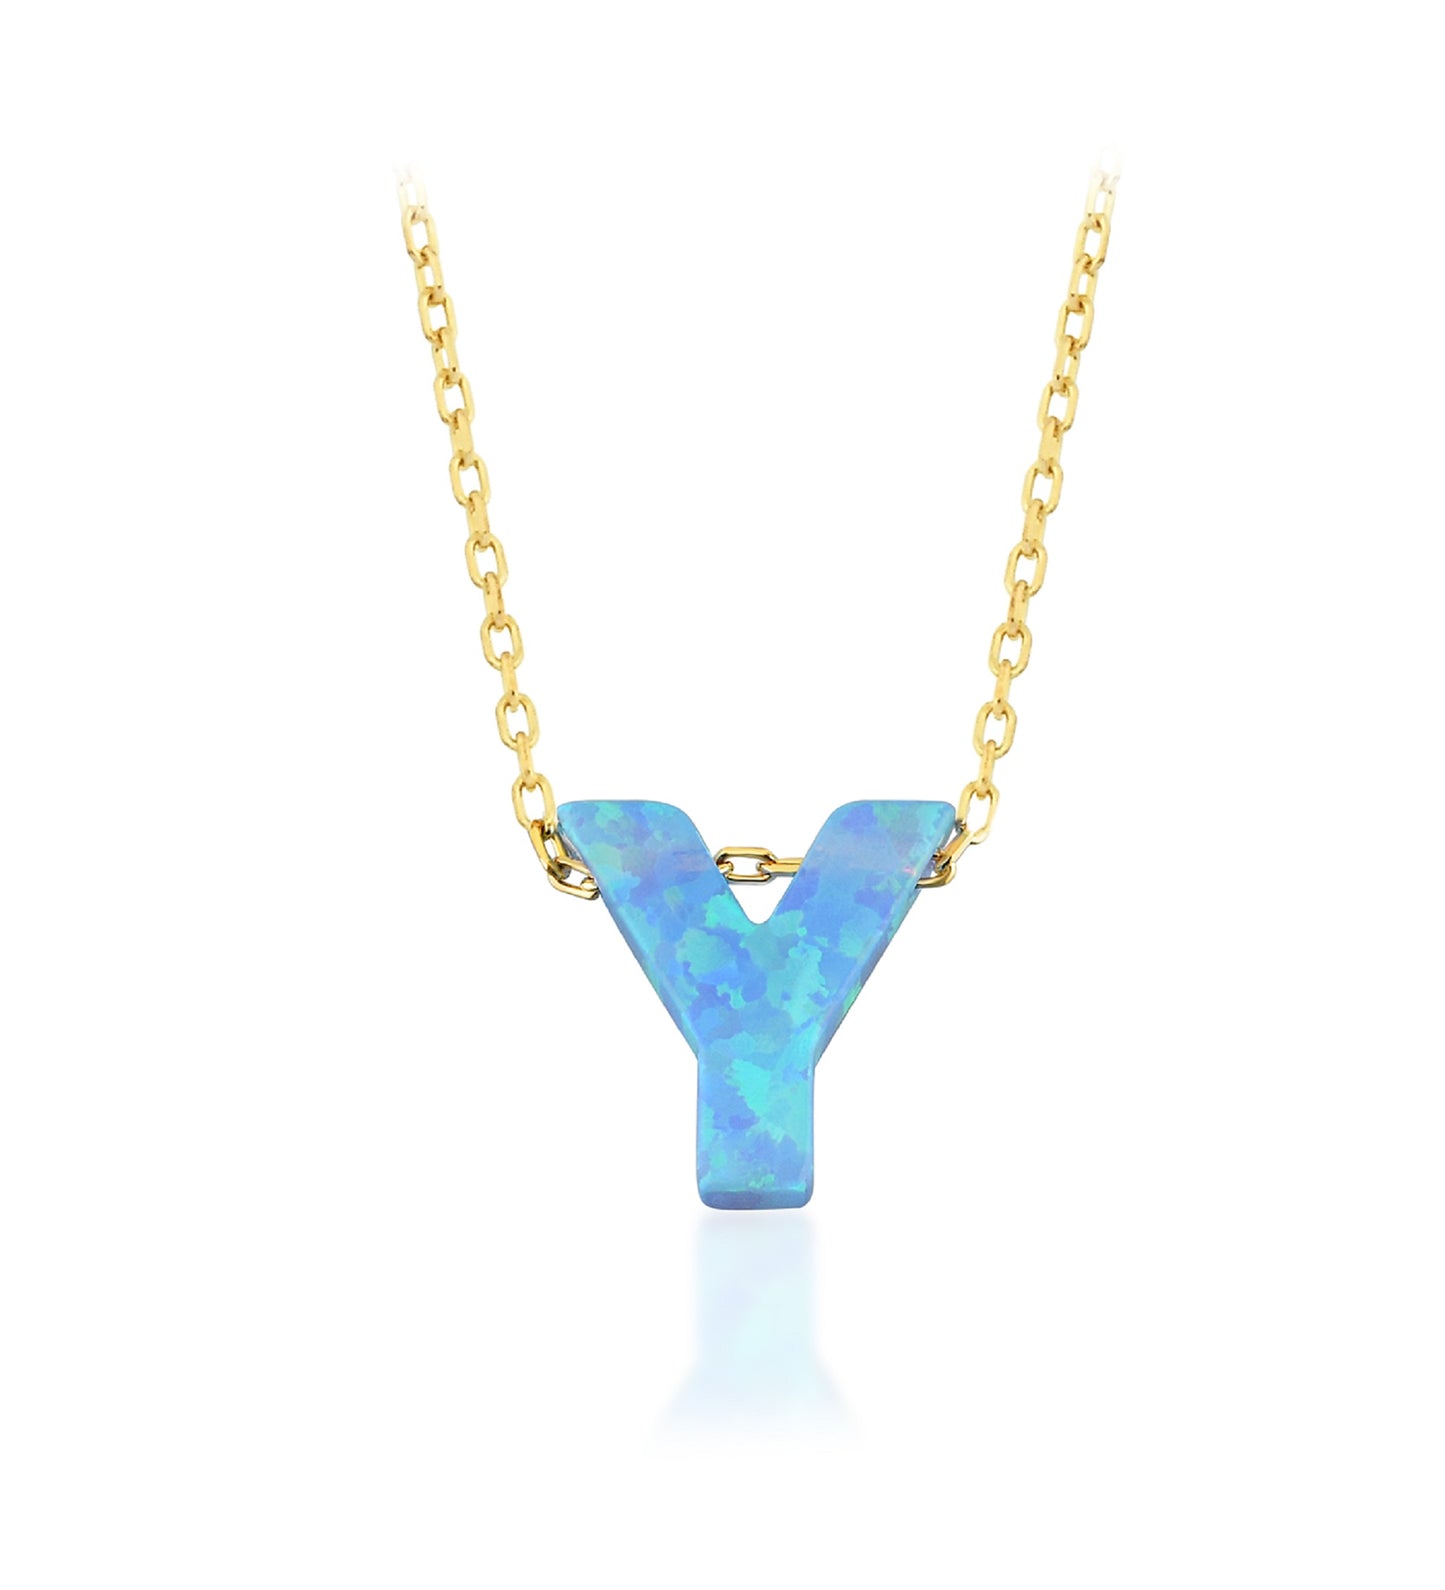 Blue Opal Initial Necklace - "Y" letter pendant